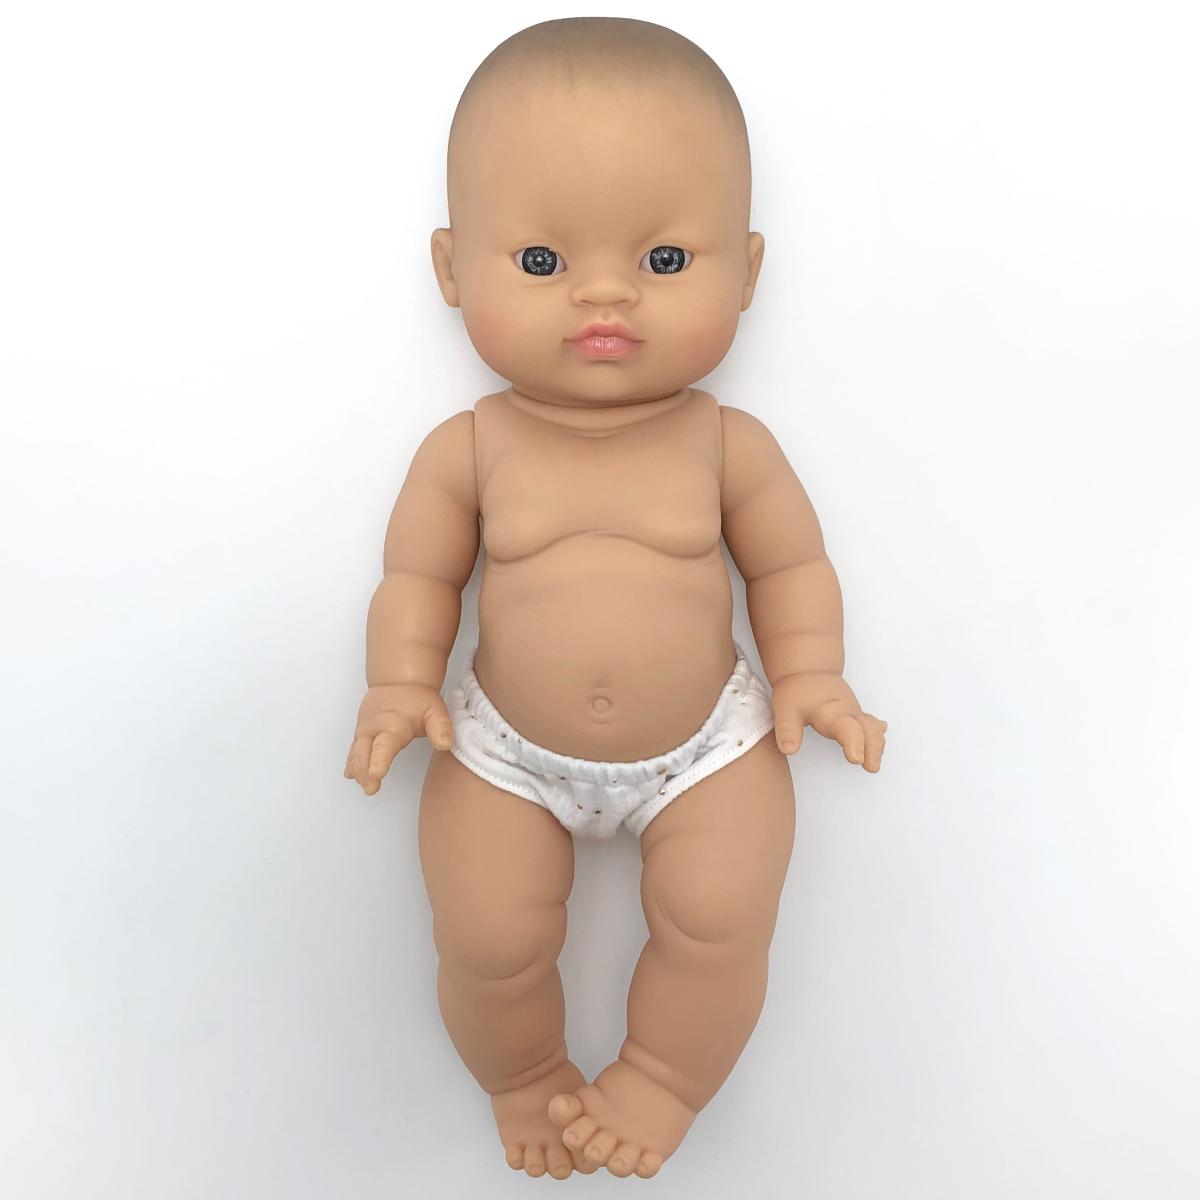 Jeux pédagogiques, poupée bébé asiatique